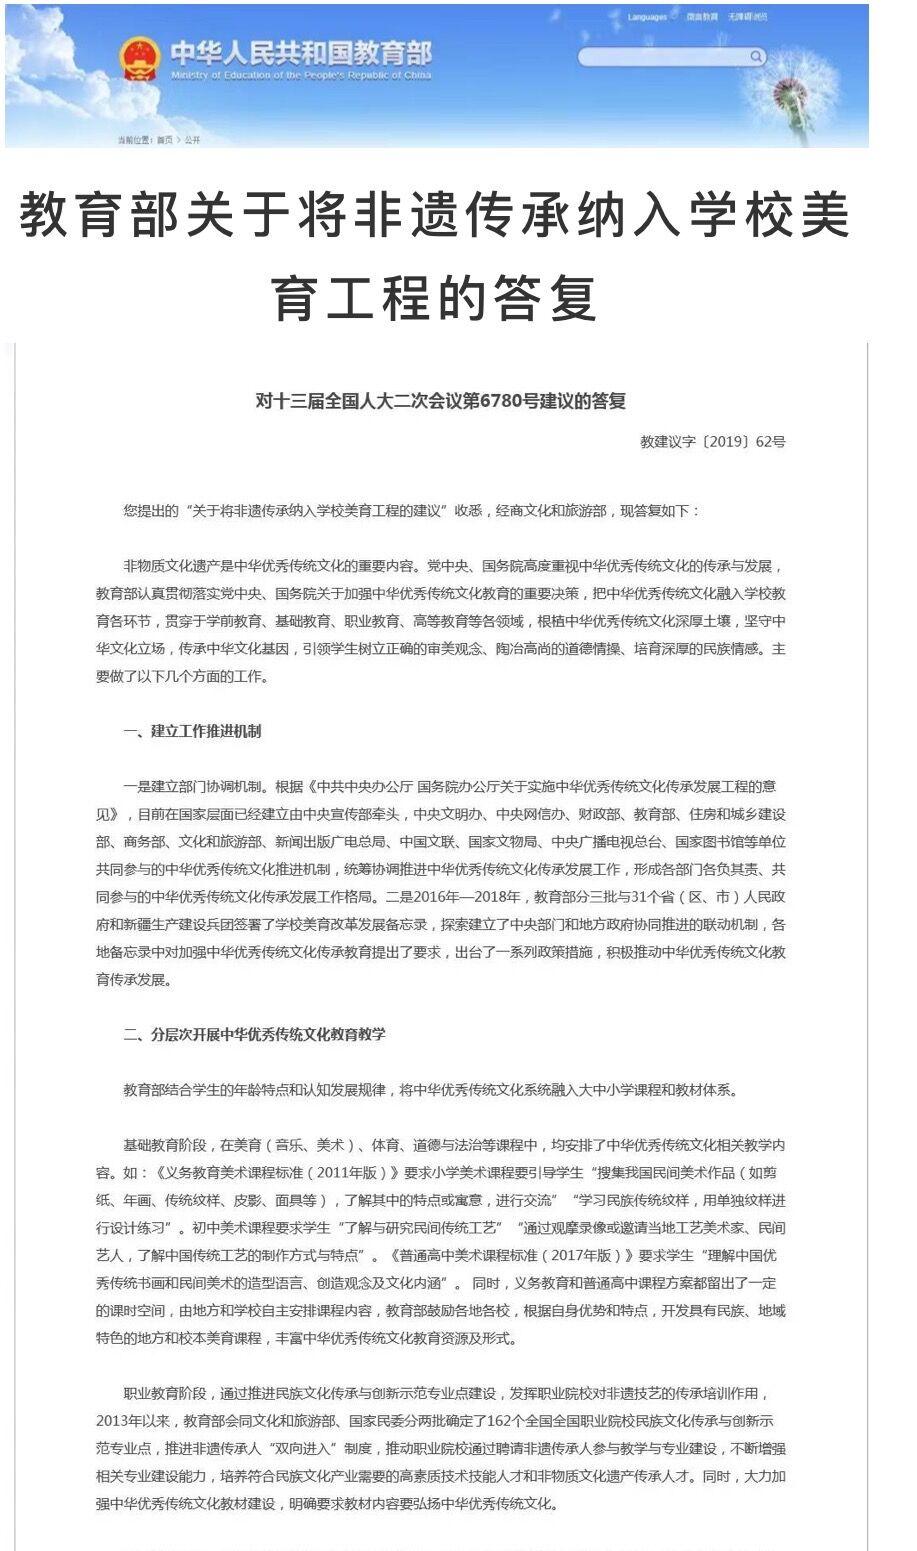 中国认证协会北京国优文化艺术中心《全国非遗技艺测评标准》发布